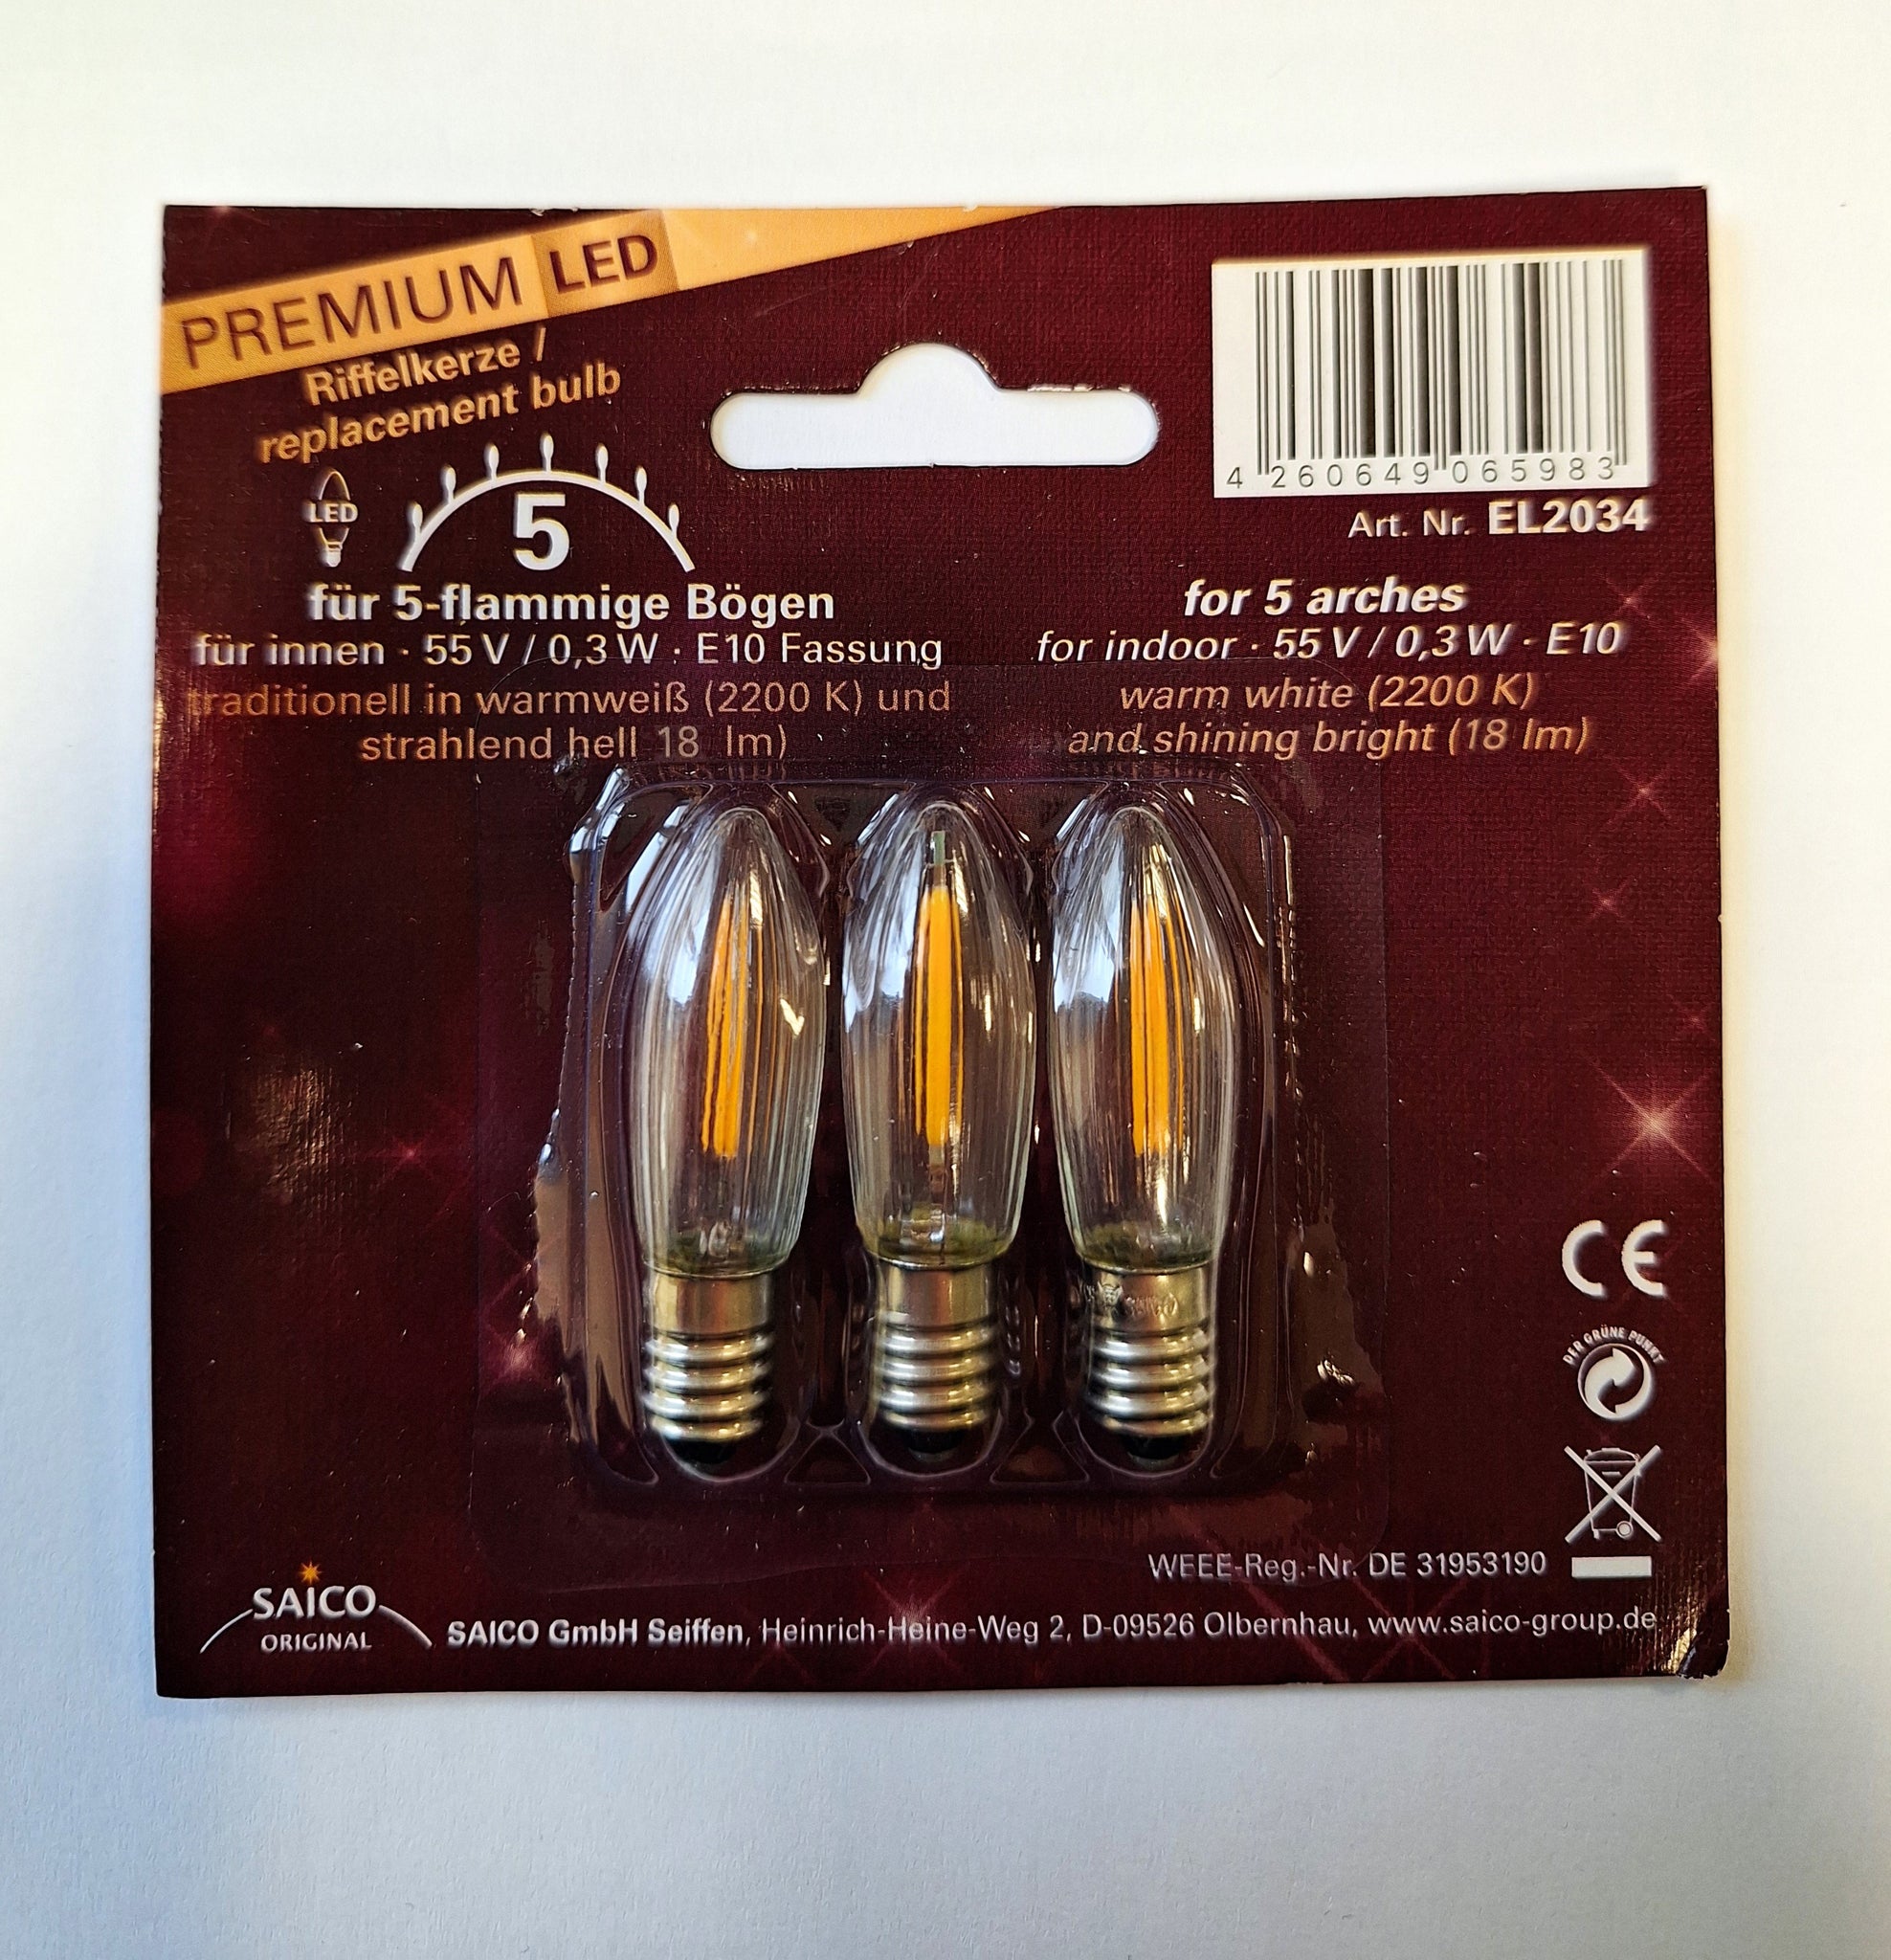 Premium LED Ersatz-/ Riffelkerzen 3x 55V - 0,2W - E10